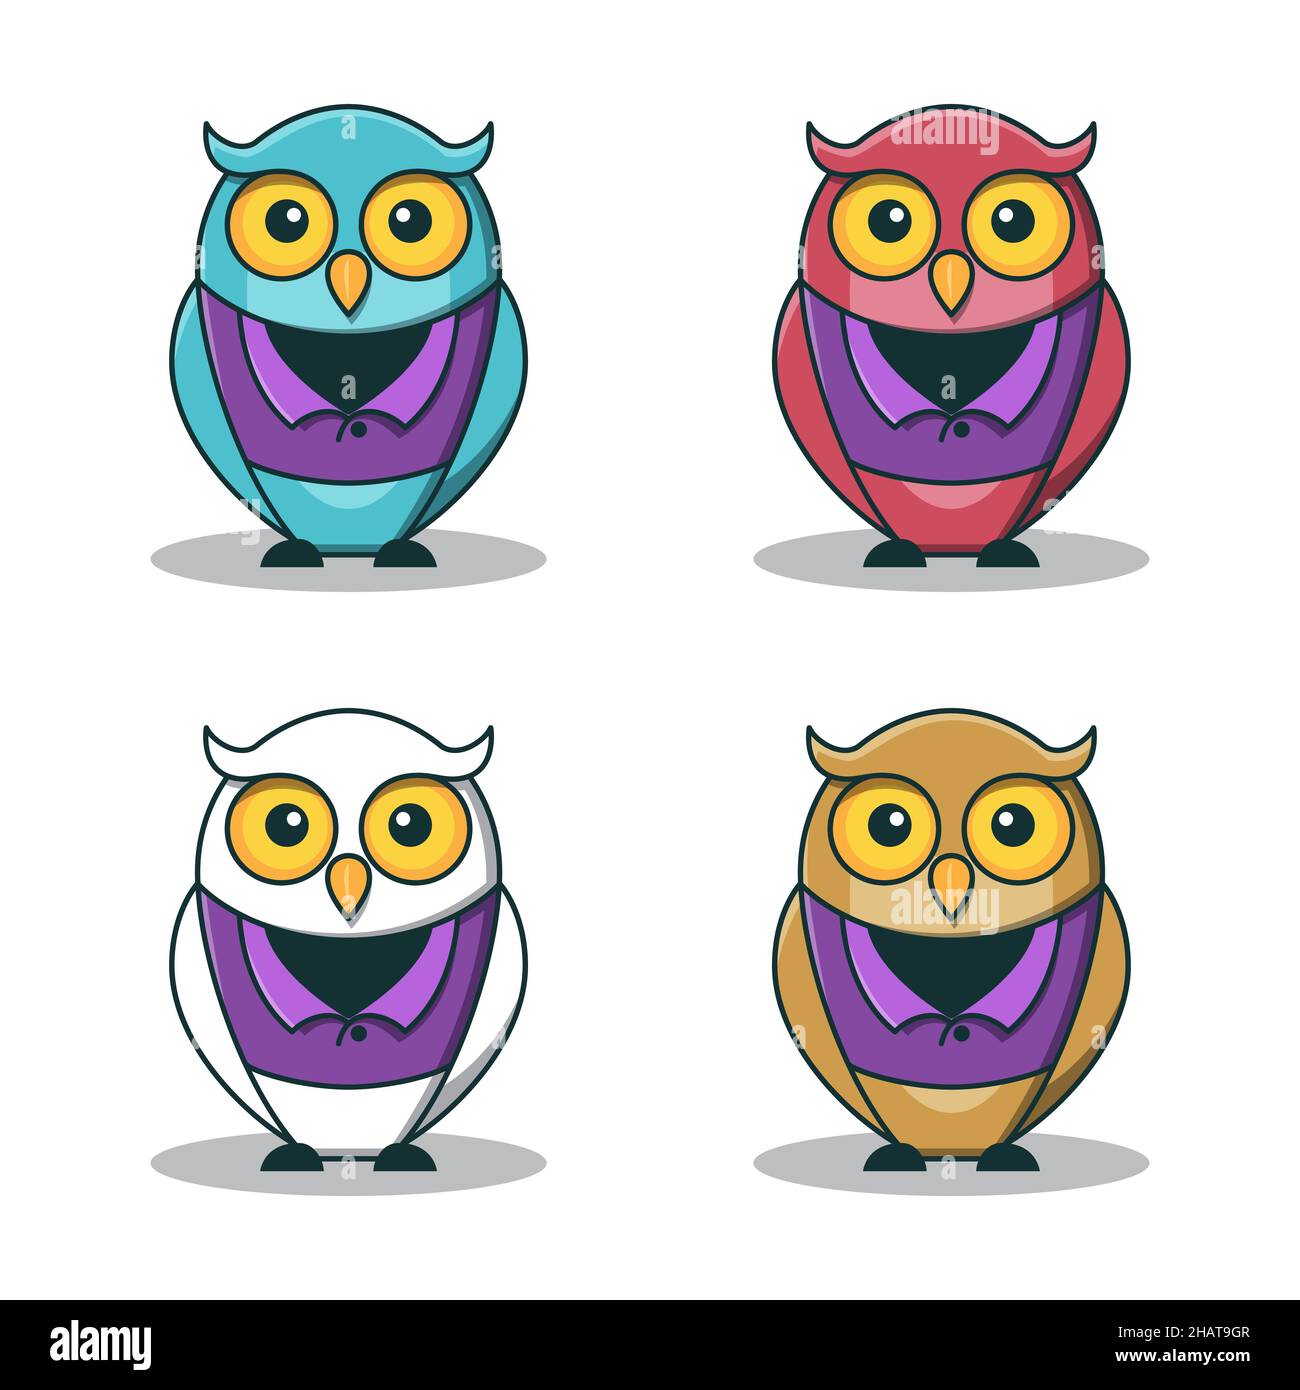 Wise Wisdom Owl Bird Teacher Education Character Cartoon Isolated Stock Vector